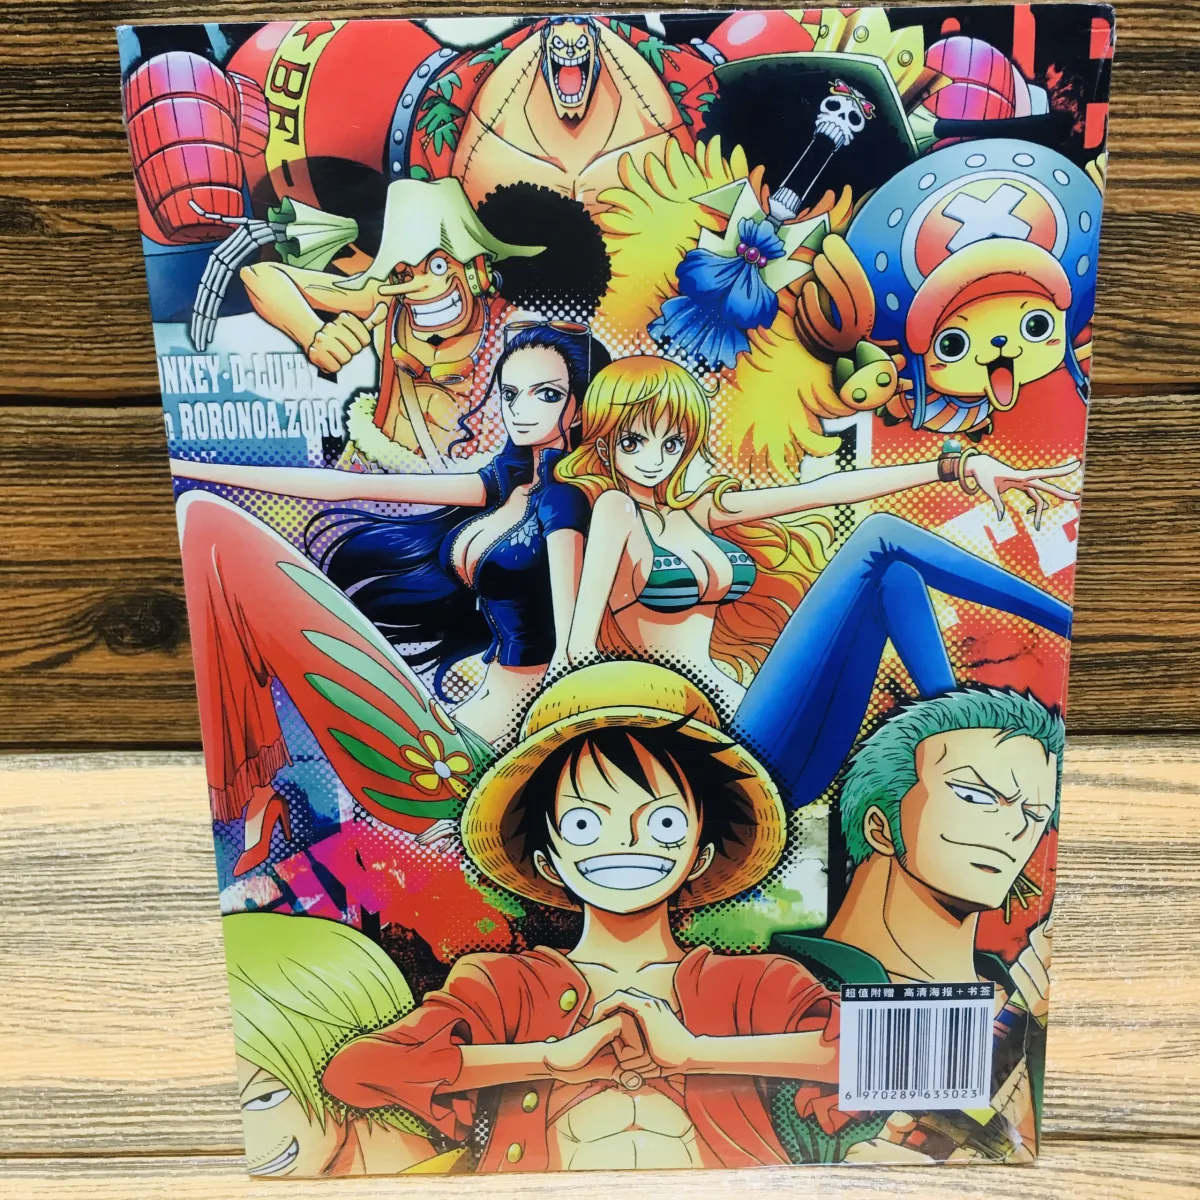 Photobook One piece đảo hải tặc stampede chibi: Photobook mới nhất của One Piece là một bộ sưu tập tuyệt vời của các bức ảnh Chibi. Stampede là một die-hard fan của One Piece sẽ cảm thấy hạnh phúc với sự lựa chọn đa dạng của các nhân vật, tạo nên một cuốn sách ảnh đáng yêu và dễ thương.